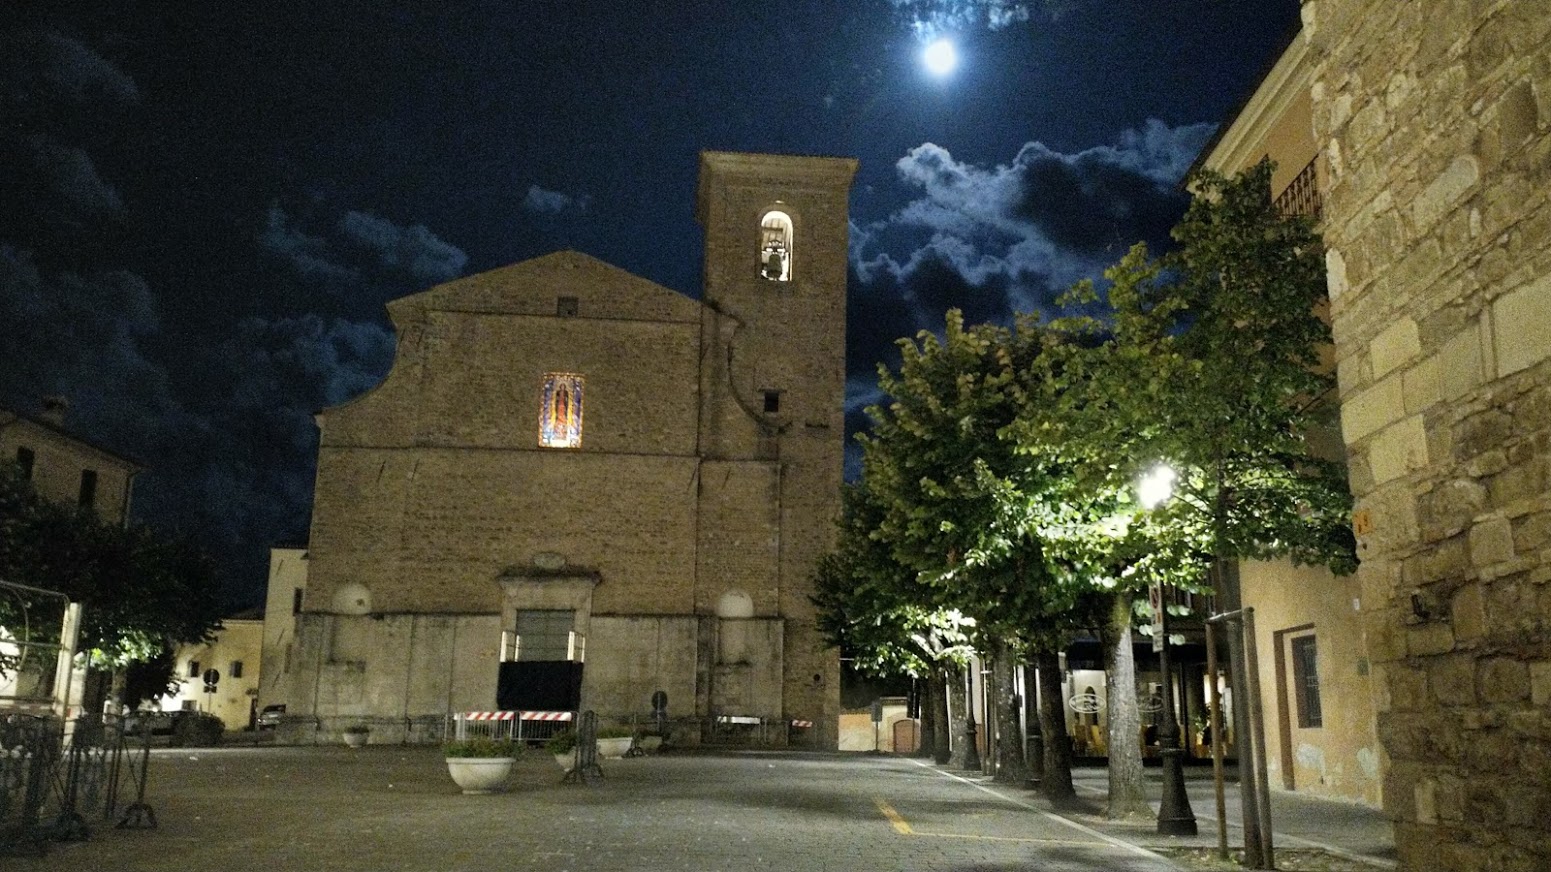 Estate 2019. La piazza di Cingoli, con la luna piena, alle quattro del mattino.